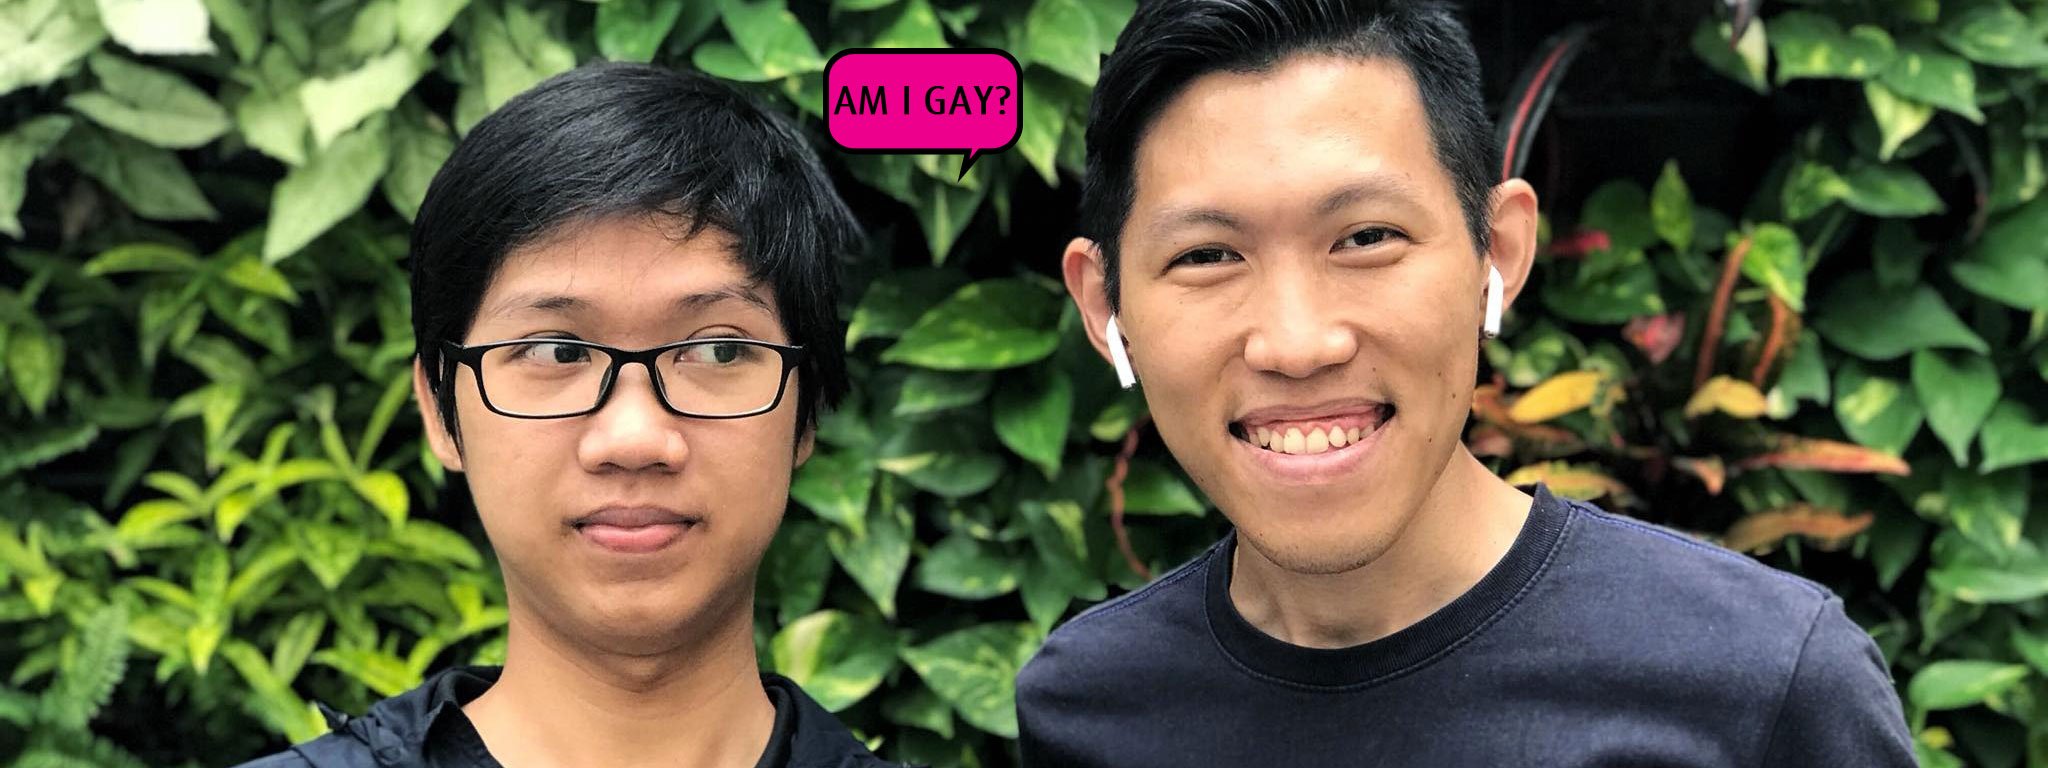 [Nghiên cứu] Nam giới nếu có anh trai dễ trở thành người đồng tính